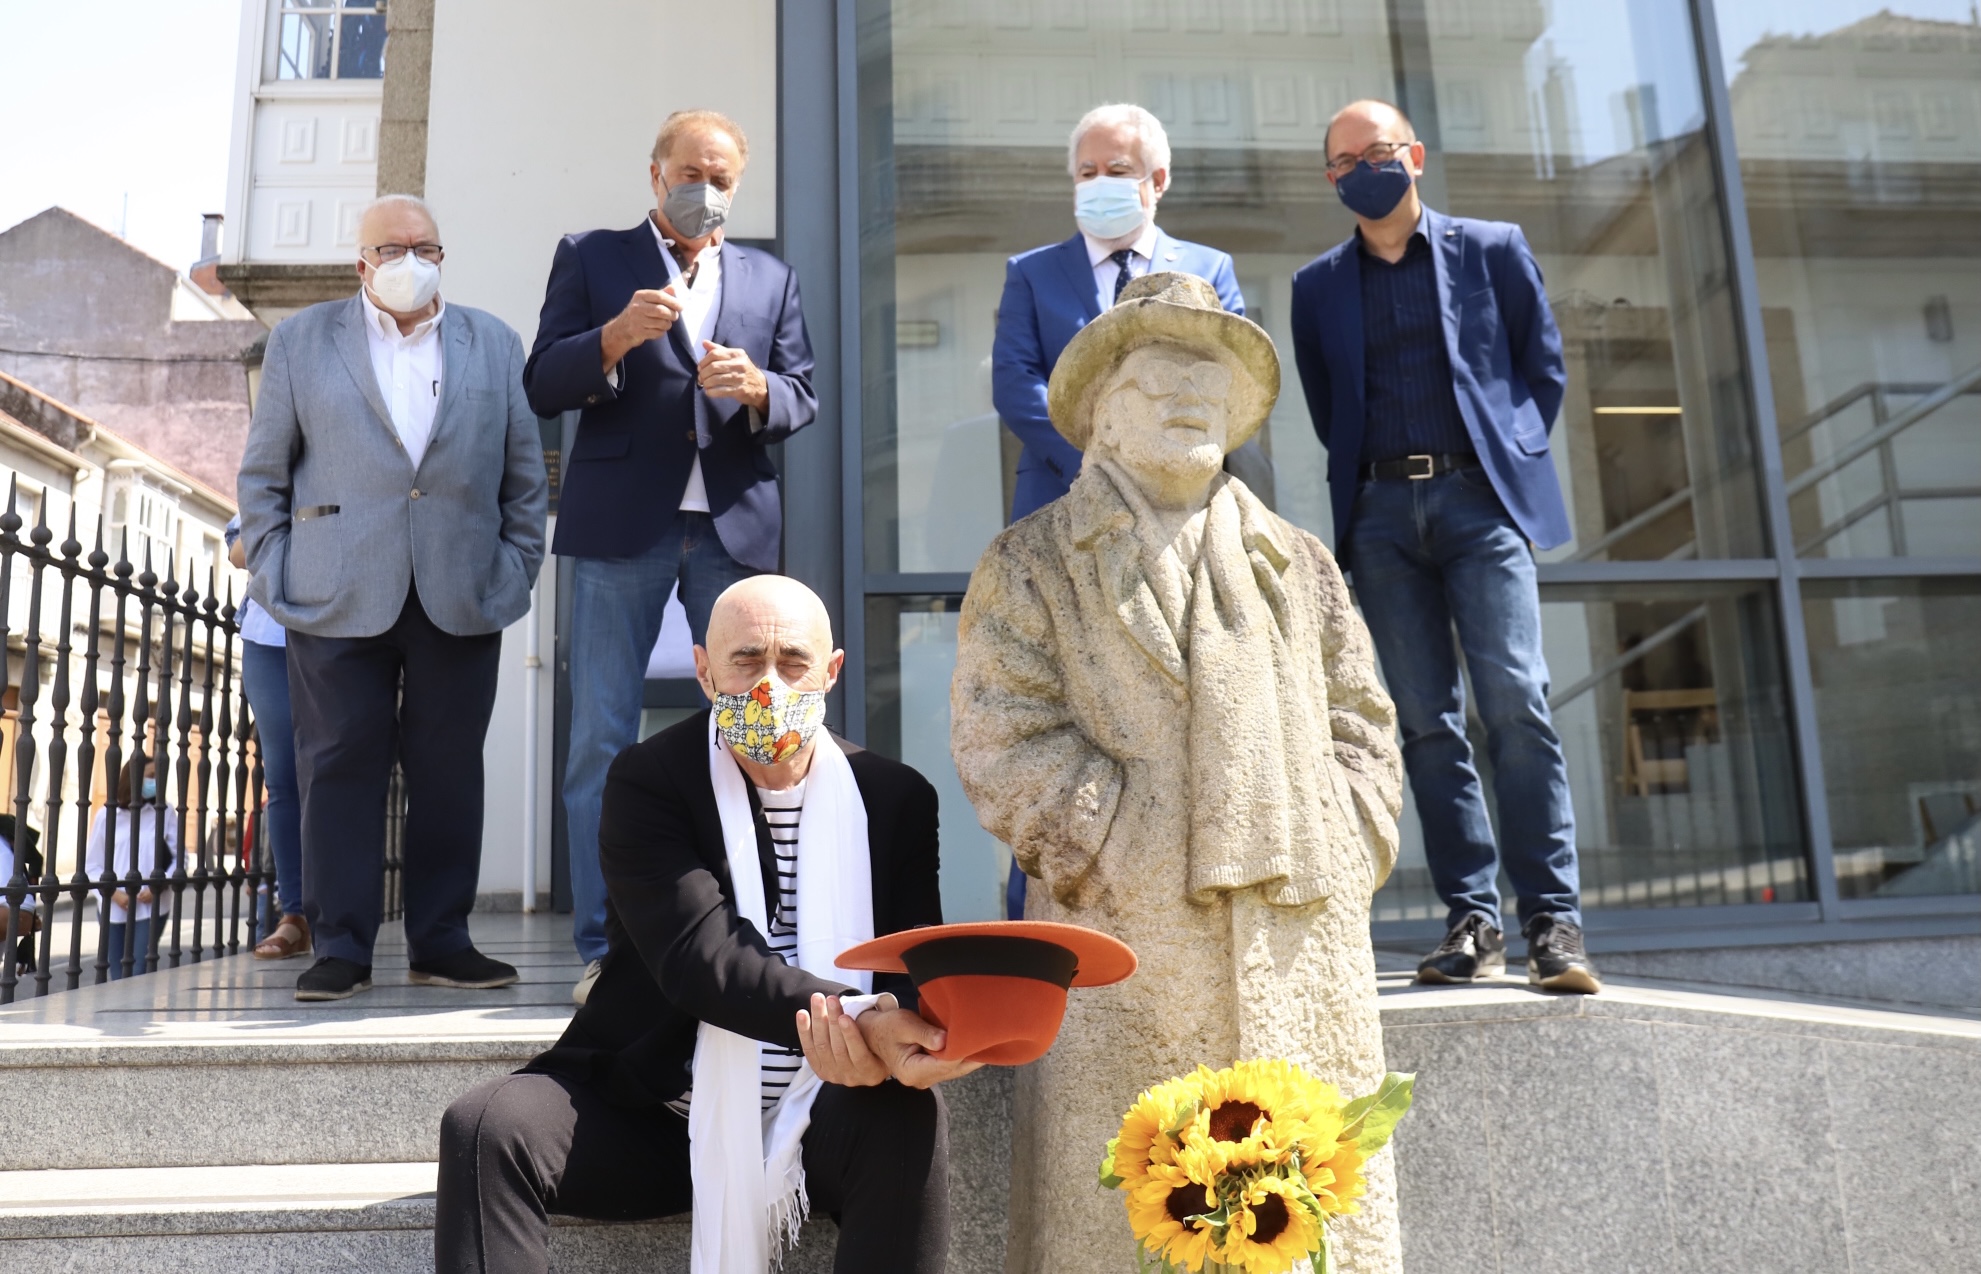 Santalices participa en Lalín na conmemoración do 25 aniversario do falecemento de Laxeiro, ”artista universal”